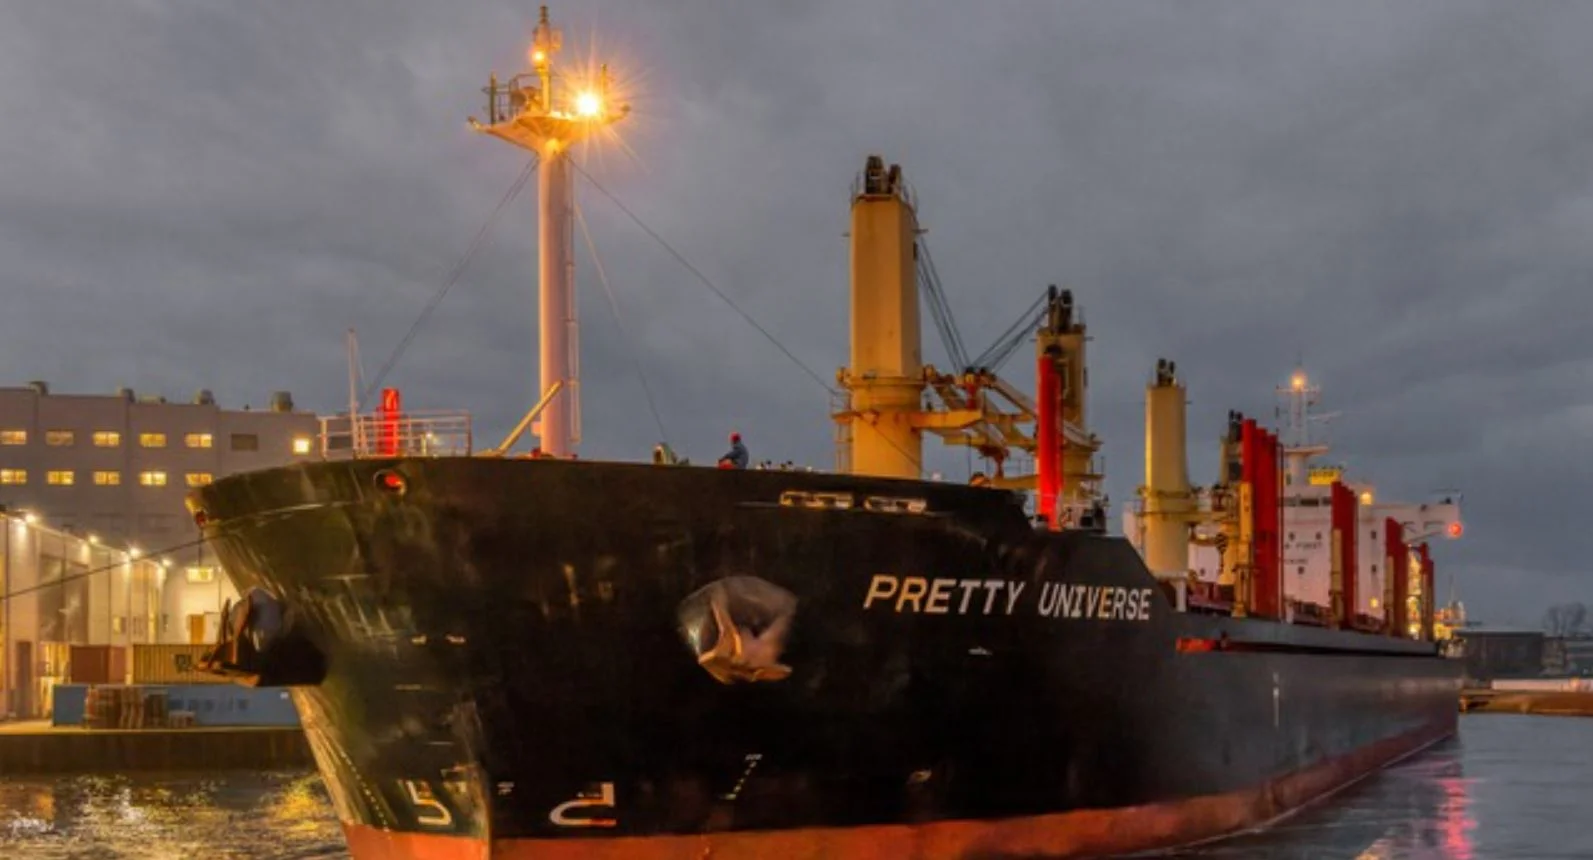 Porto de Salvador recebe navio com 20 mil toneladas de trilhos para trecho da Fiol de Caetité e Barreiras